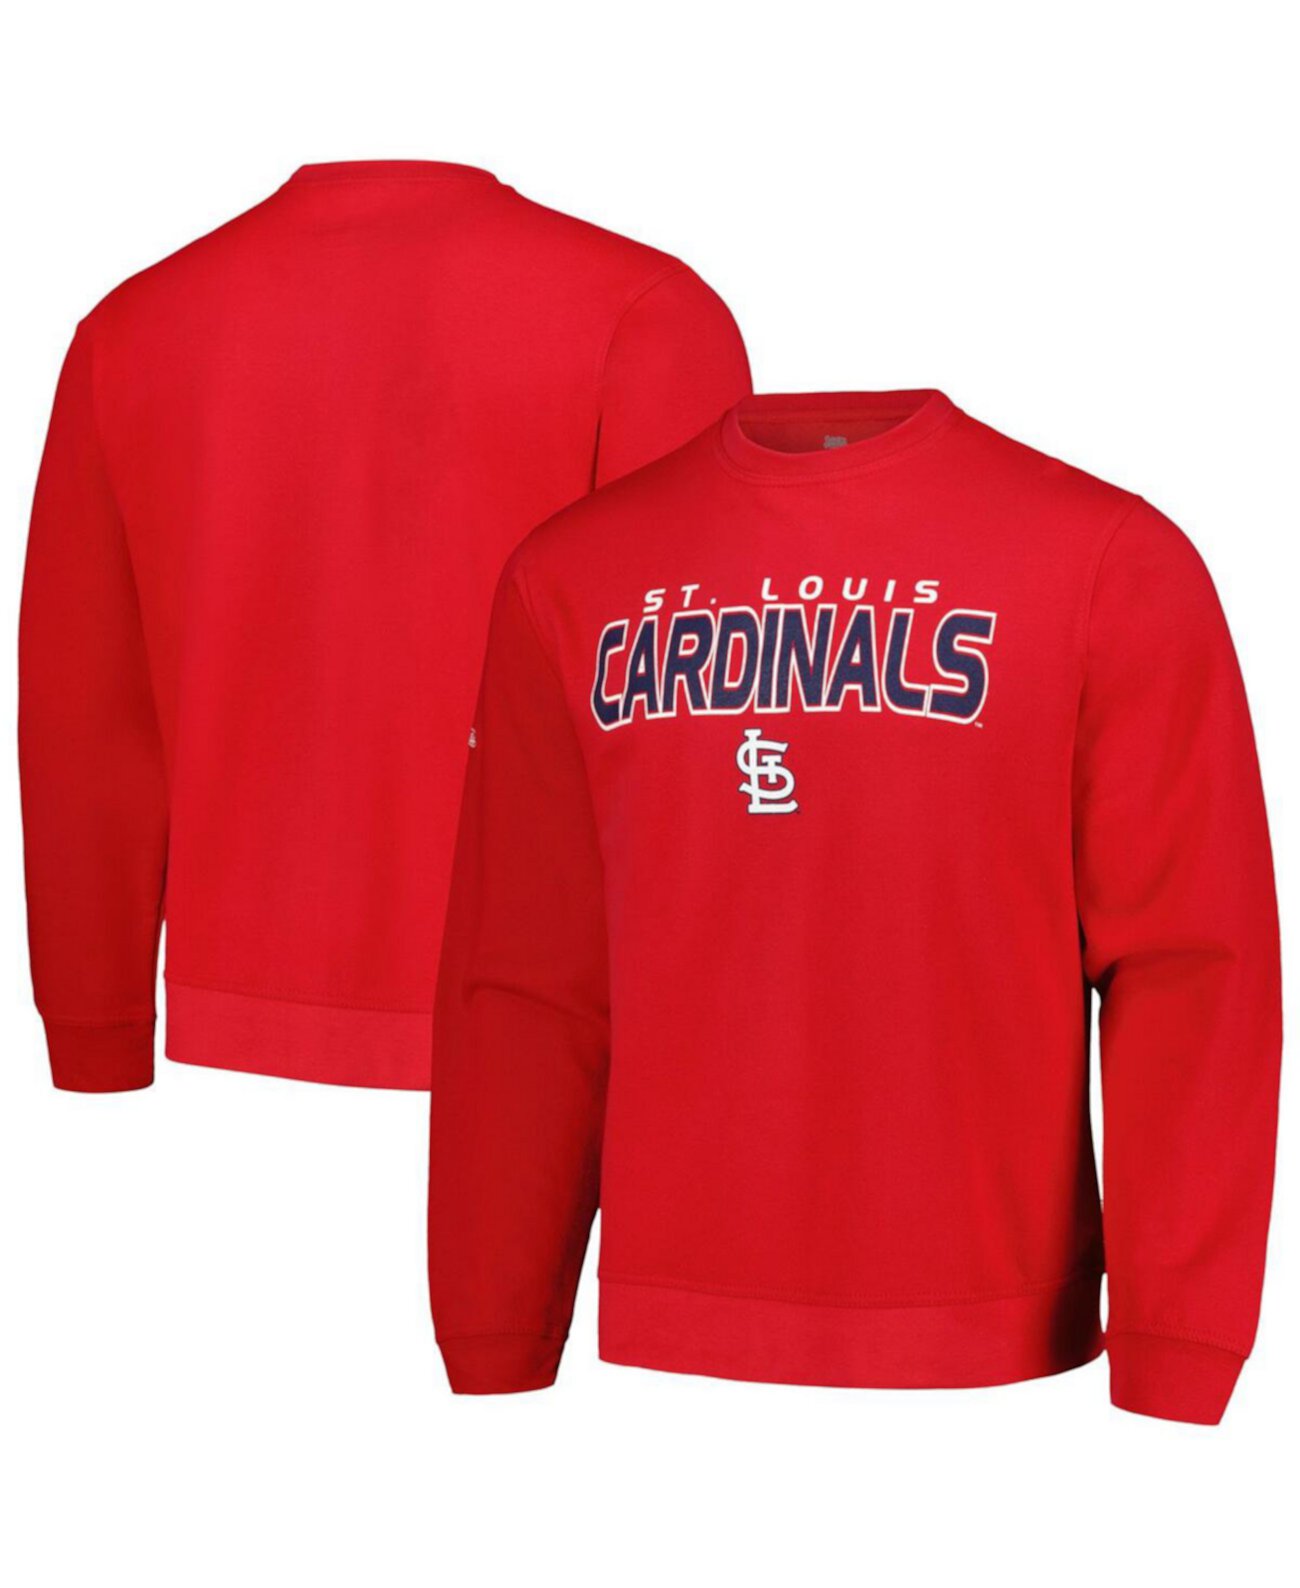 Мужской красный пуловер St. Louis Cardinals свитшот Stitches